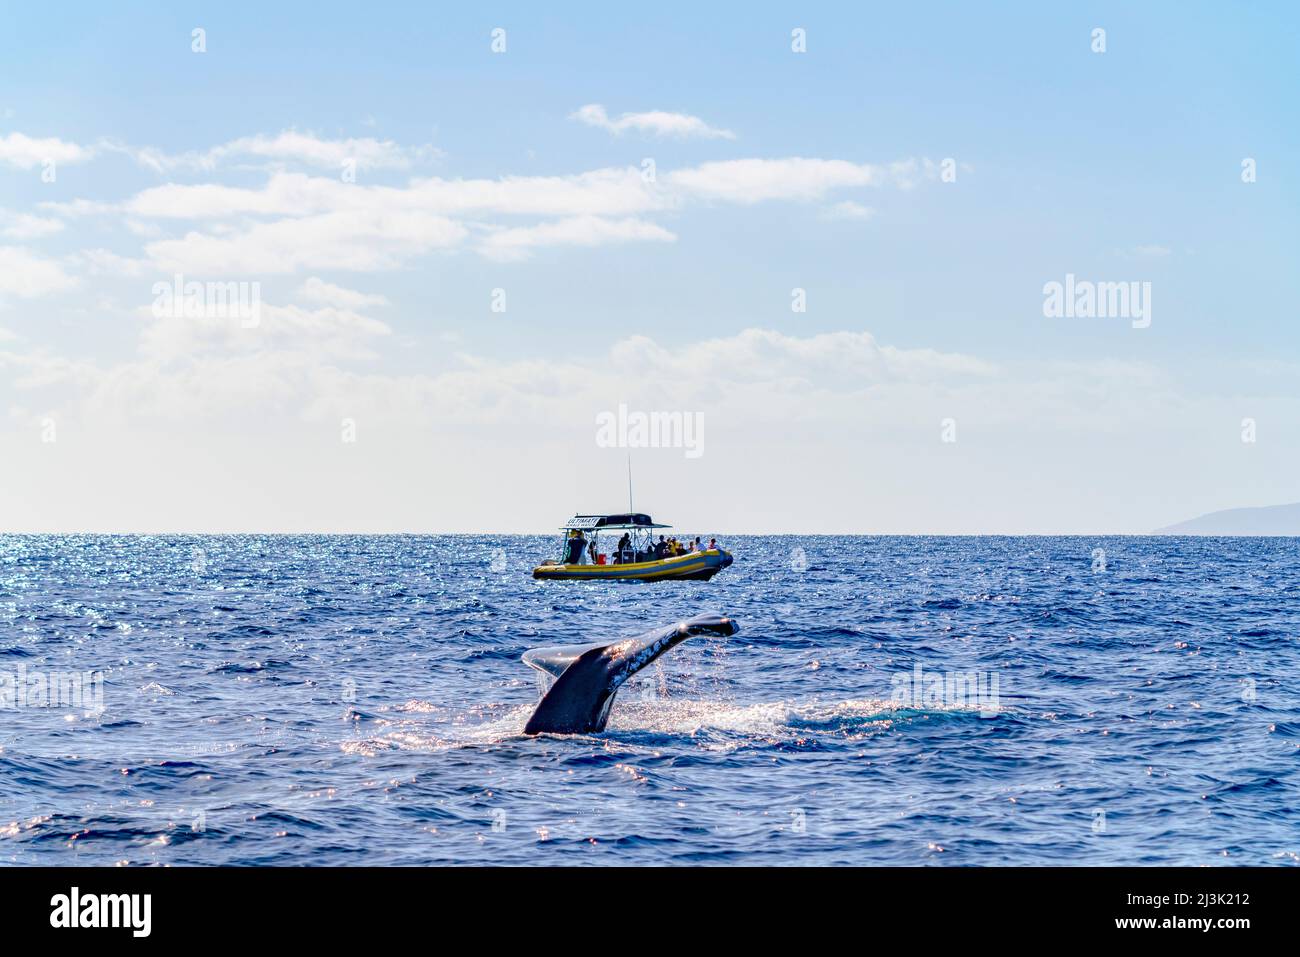 Los turistas en una expedición ven una oleada de ballenas desde su barco en el océano abierto frente a las islas hawaianas; Maui, Hawái, Estados Unidos de América Foto de stock